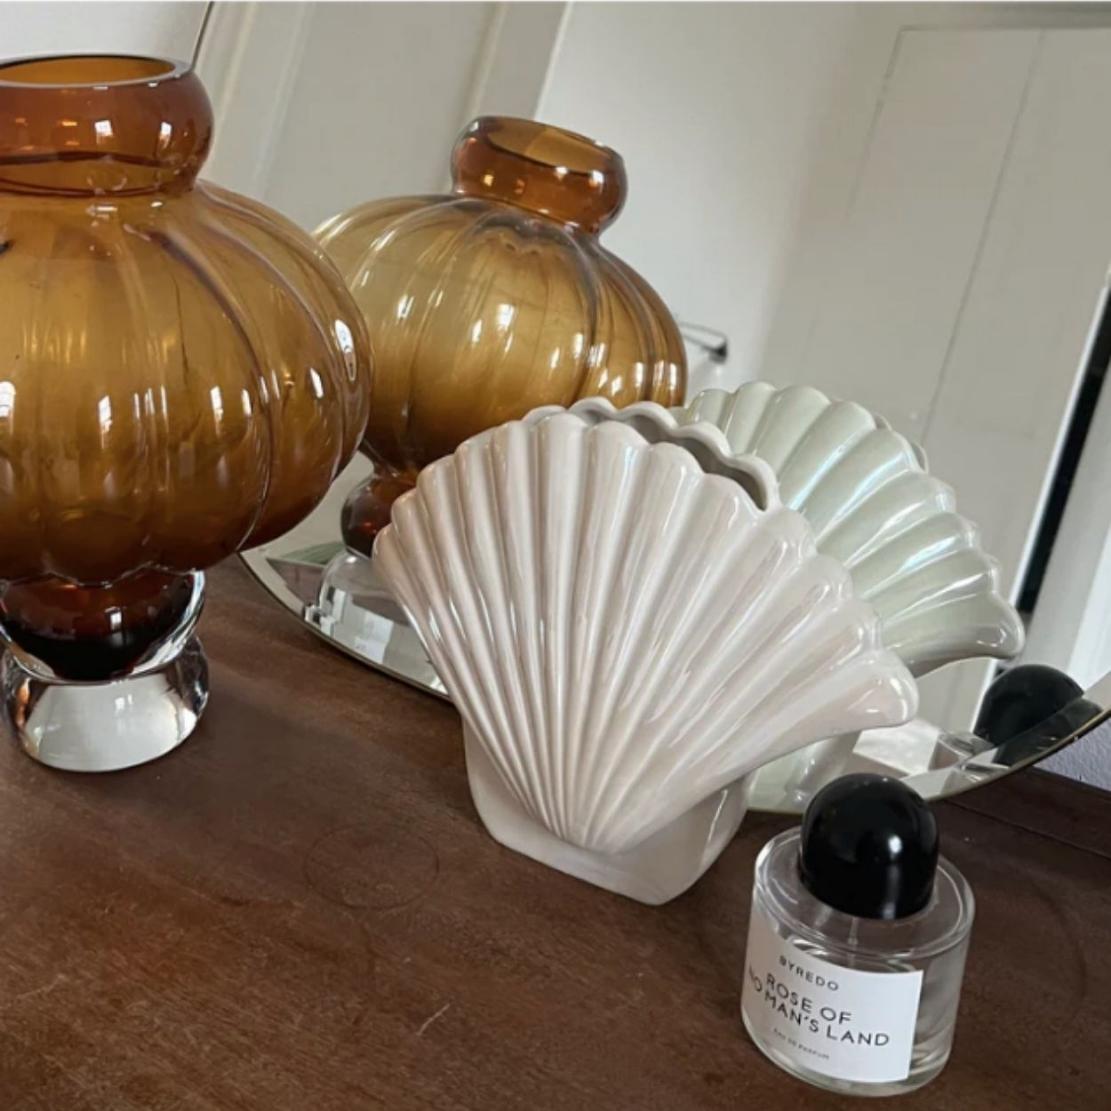 White, elegant ceramic shell vase on wood table